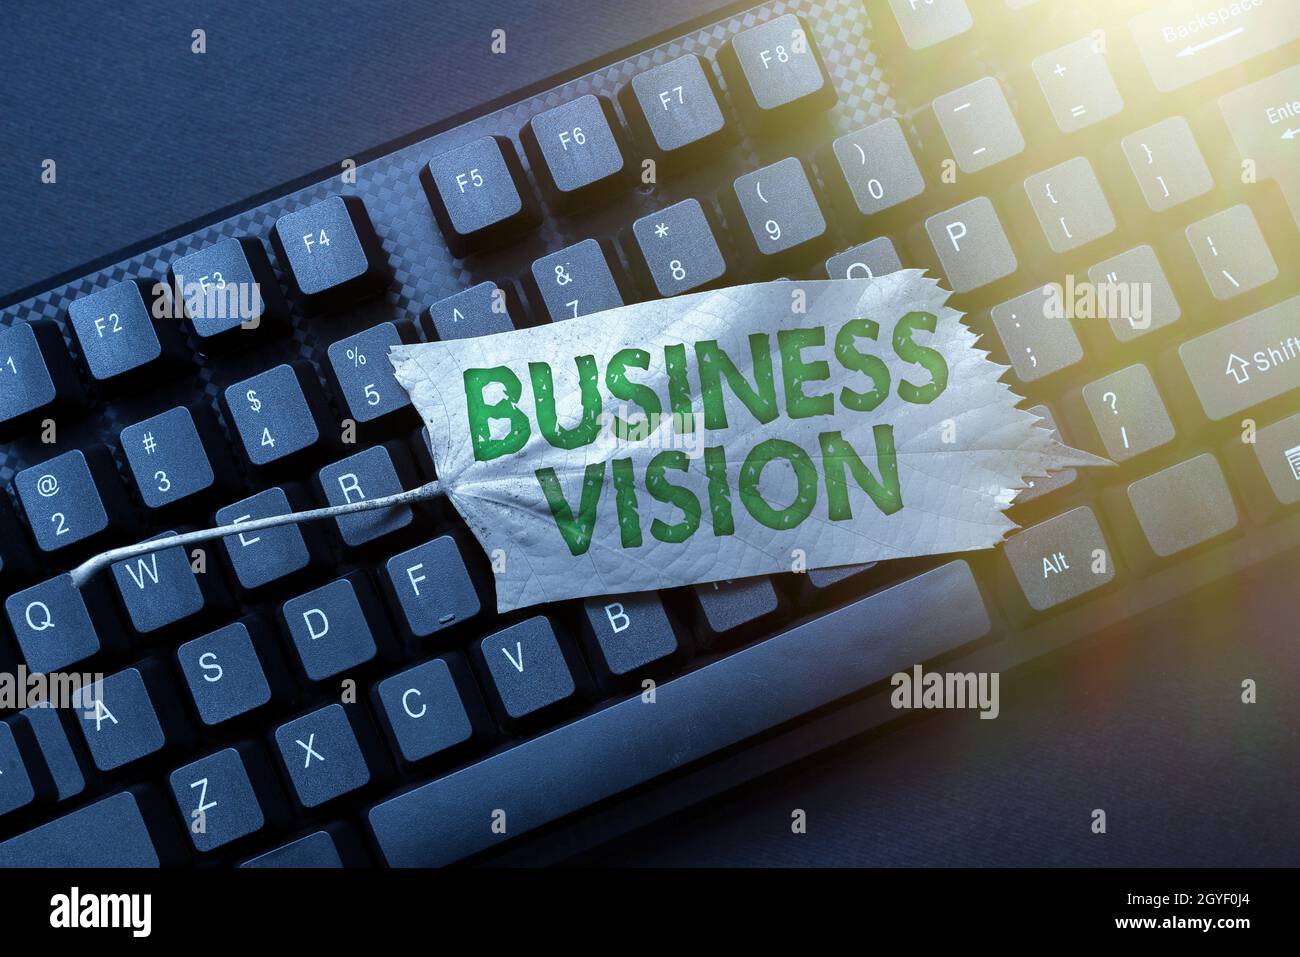 Schild mit Business Vision, Internet-Konzept Beschreibung dessen, was ein Unternehmen erreichen möchte, Neueingabe alter Arbeitsblattdaten, Abstract Typi Stockfoto